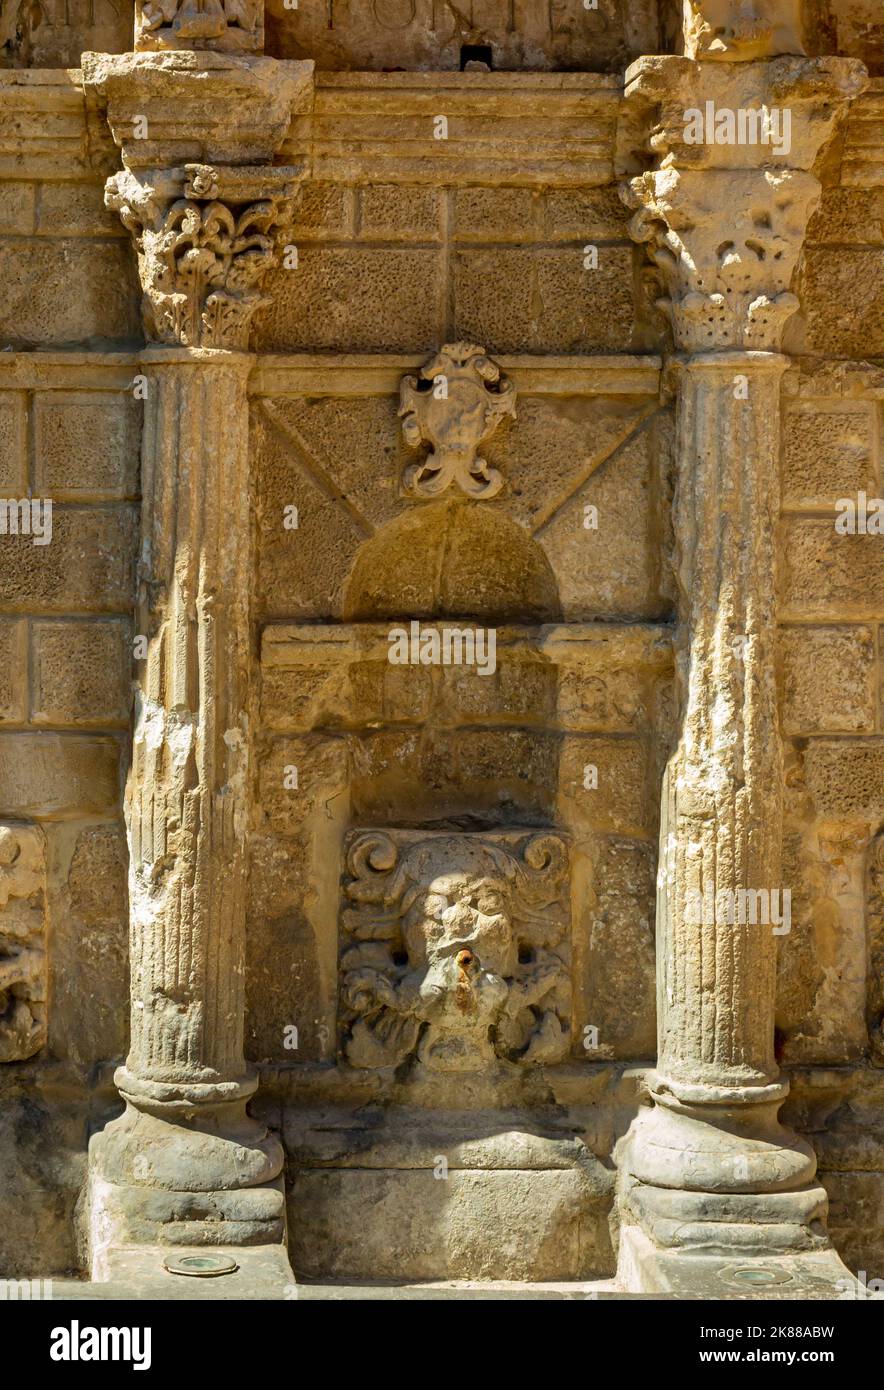 La fontaine Rimondi sur la place Petichaki Rethymnon Crète Grèce construite en 1626 pendant la période vénitienne de règne sur l'île. Banque D'Images